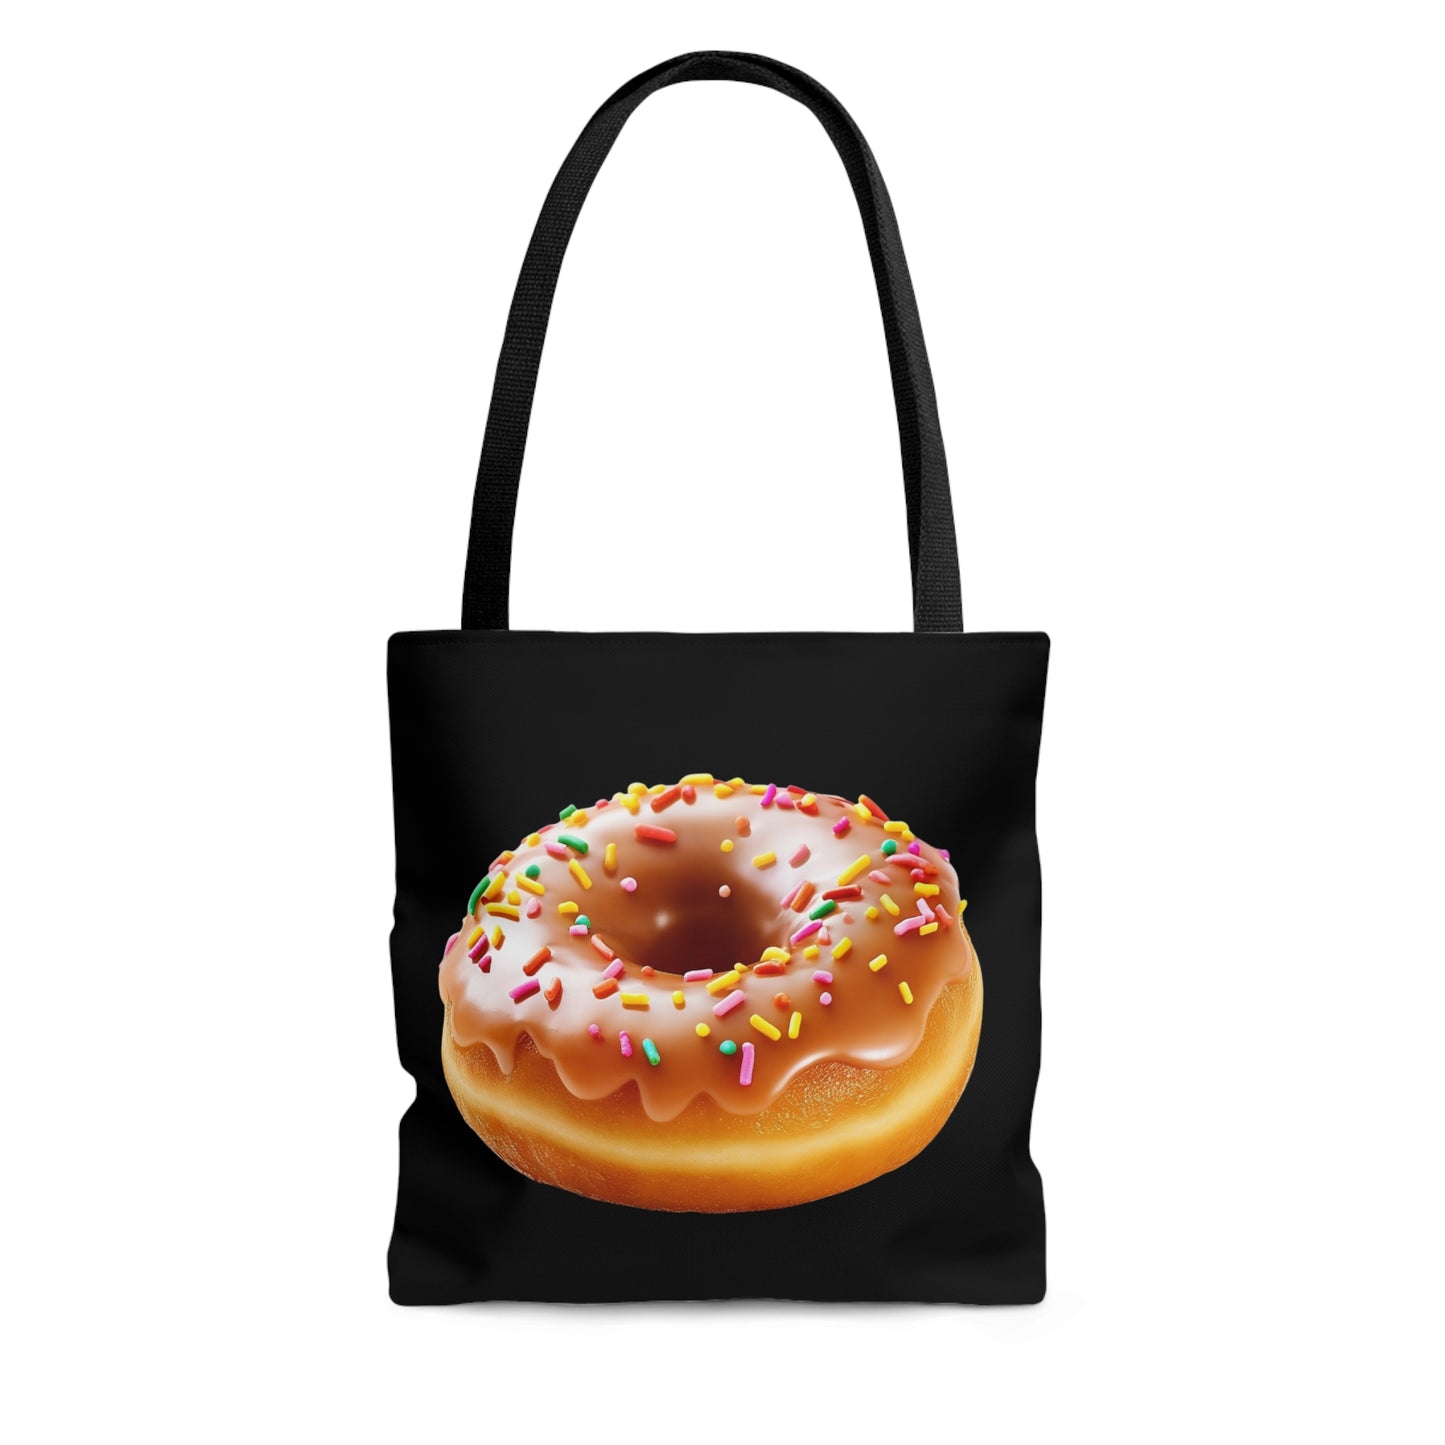 Sprinkled Donut, Tote Bag